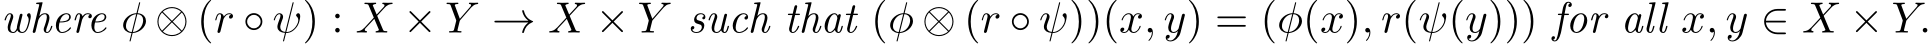 where φ ⊗ (r ◦ ψ) : X × Y → X × Y such that (φ ⊗ (r ◦ ψ))(x, y) = (φ(x), r(ψ(y))) for all x, y ∈ X × Y.